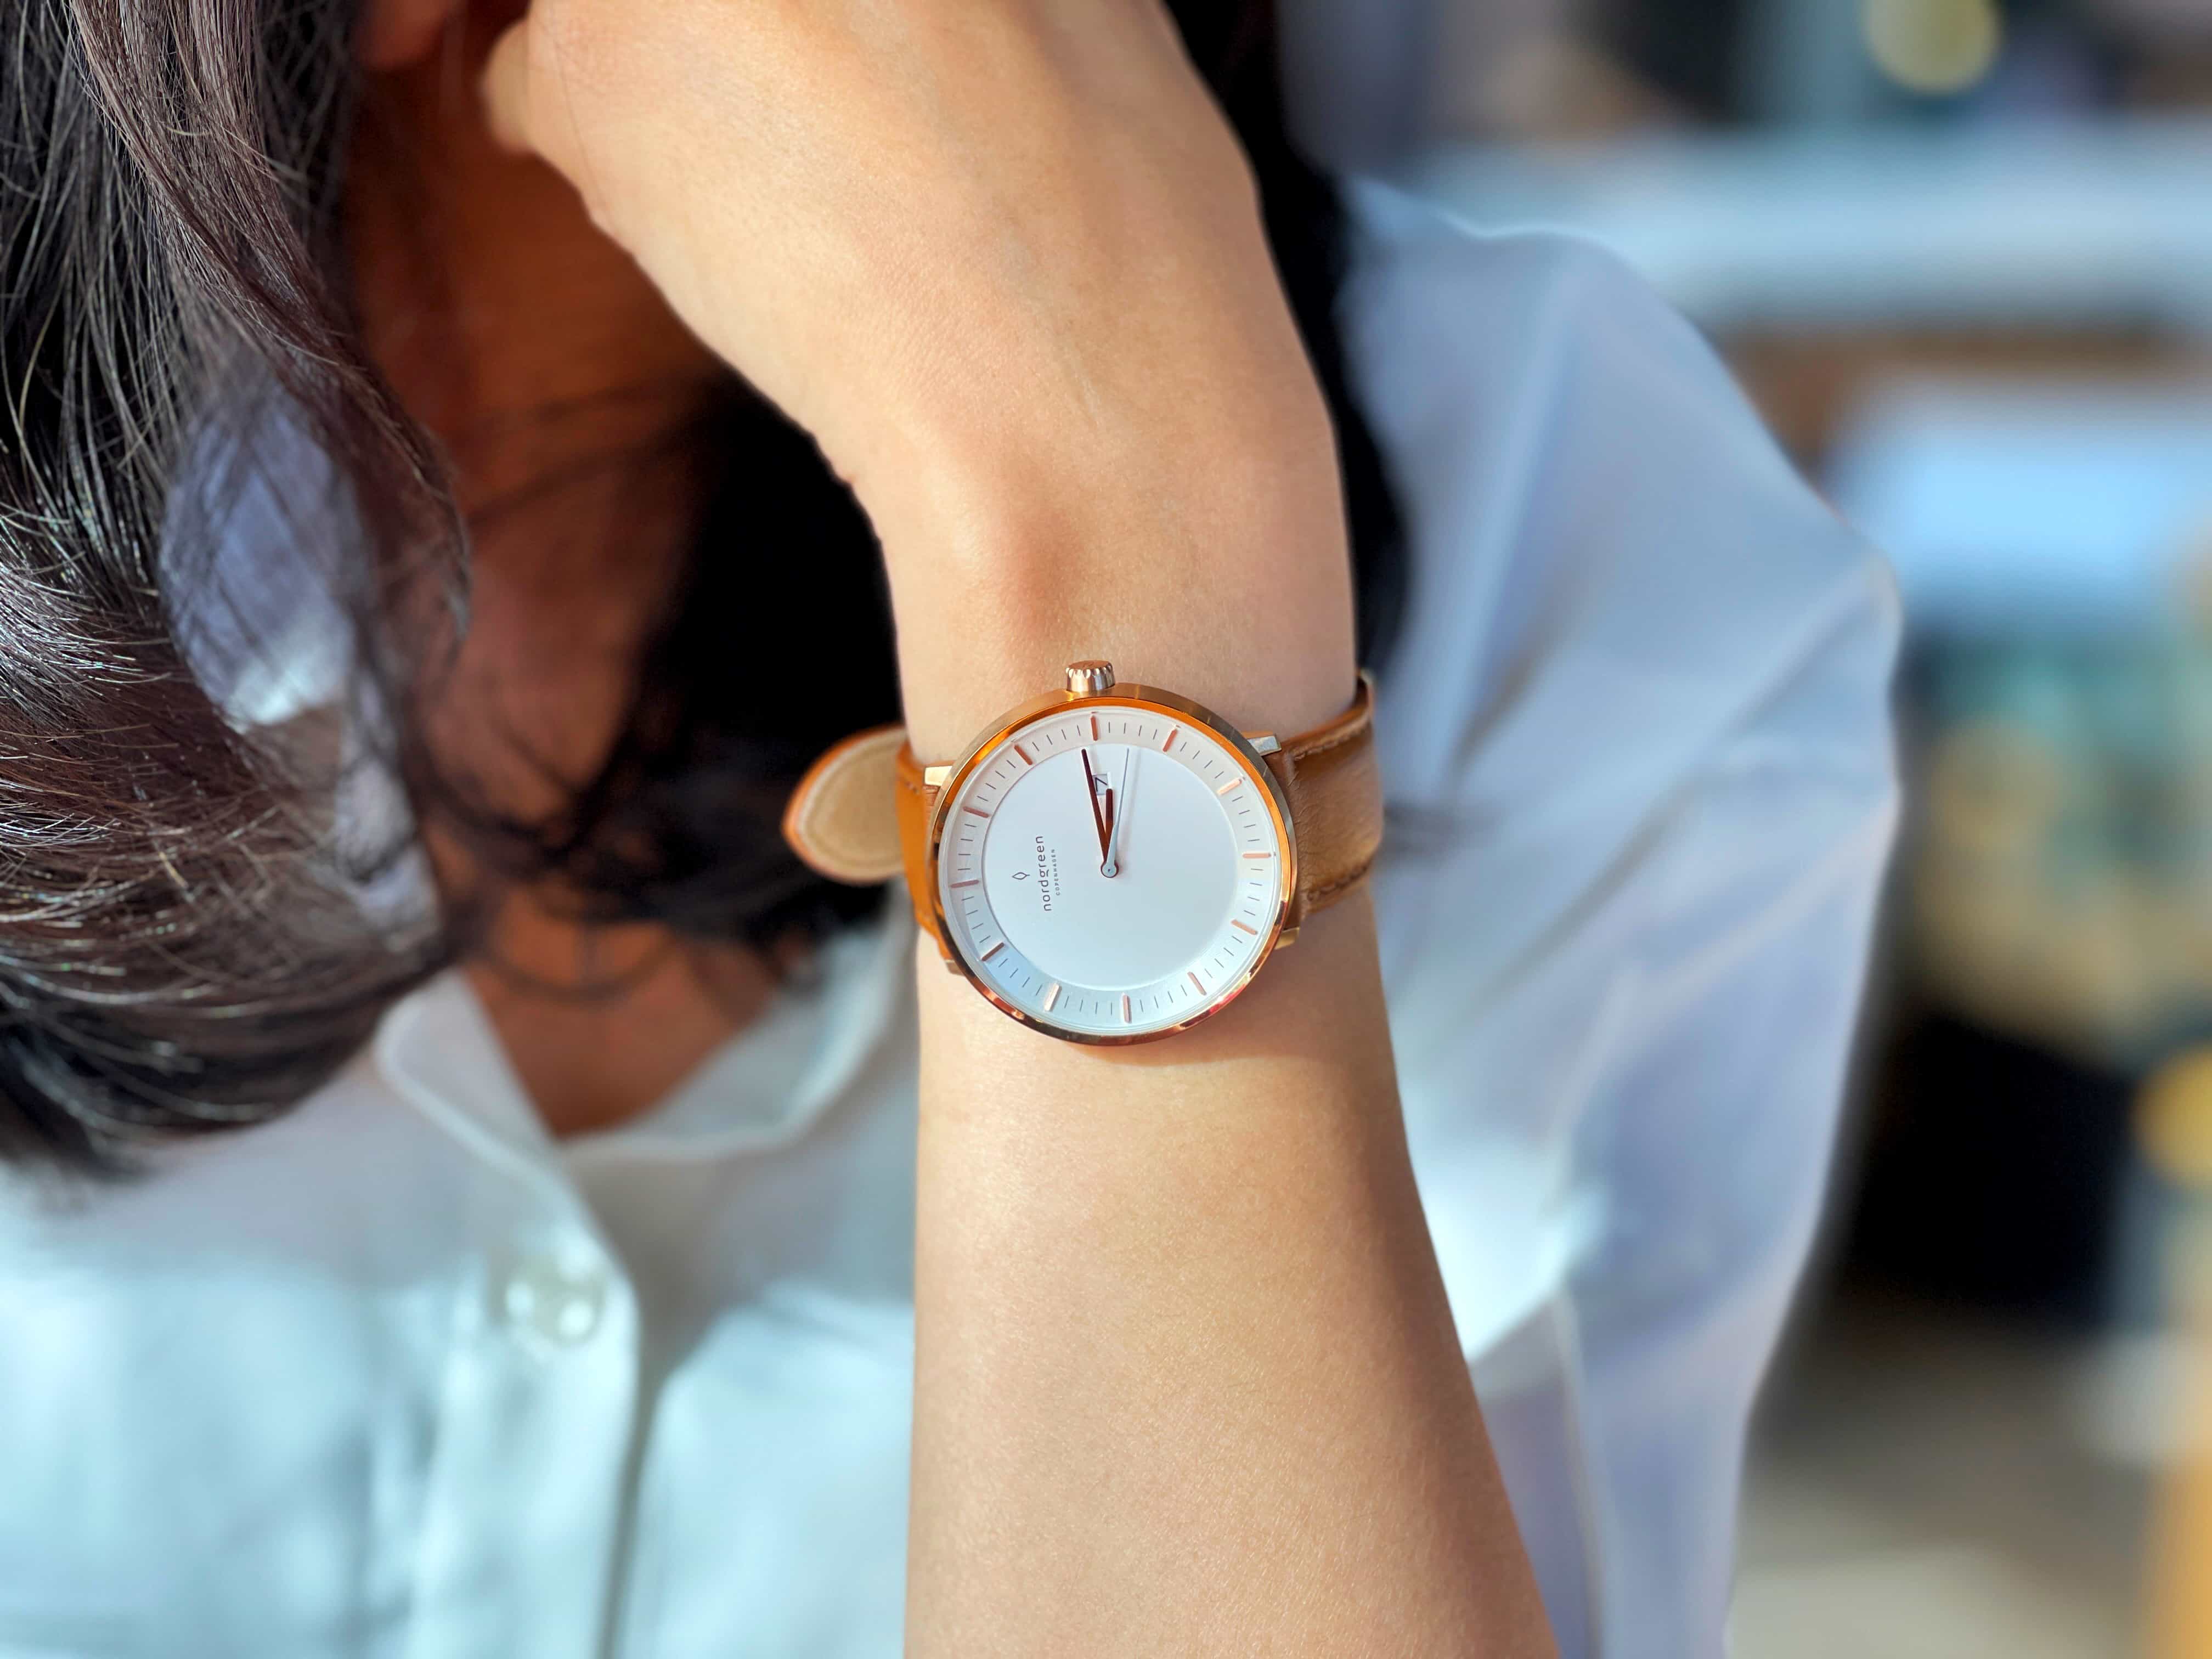 Nordgreen 北歐設計腕錶 – ig網紅大推手錶款式、時尚優雅外型